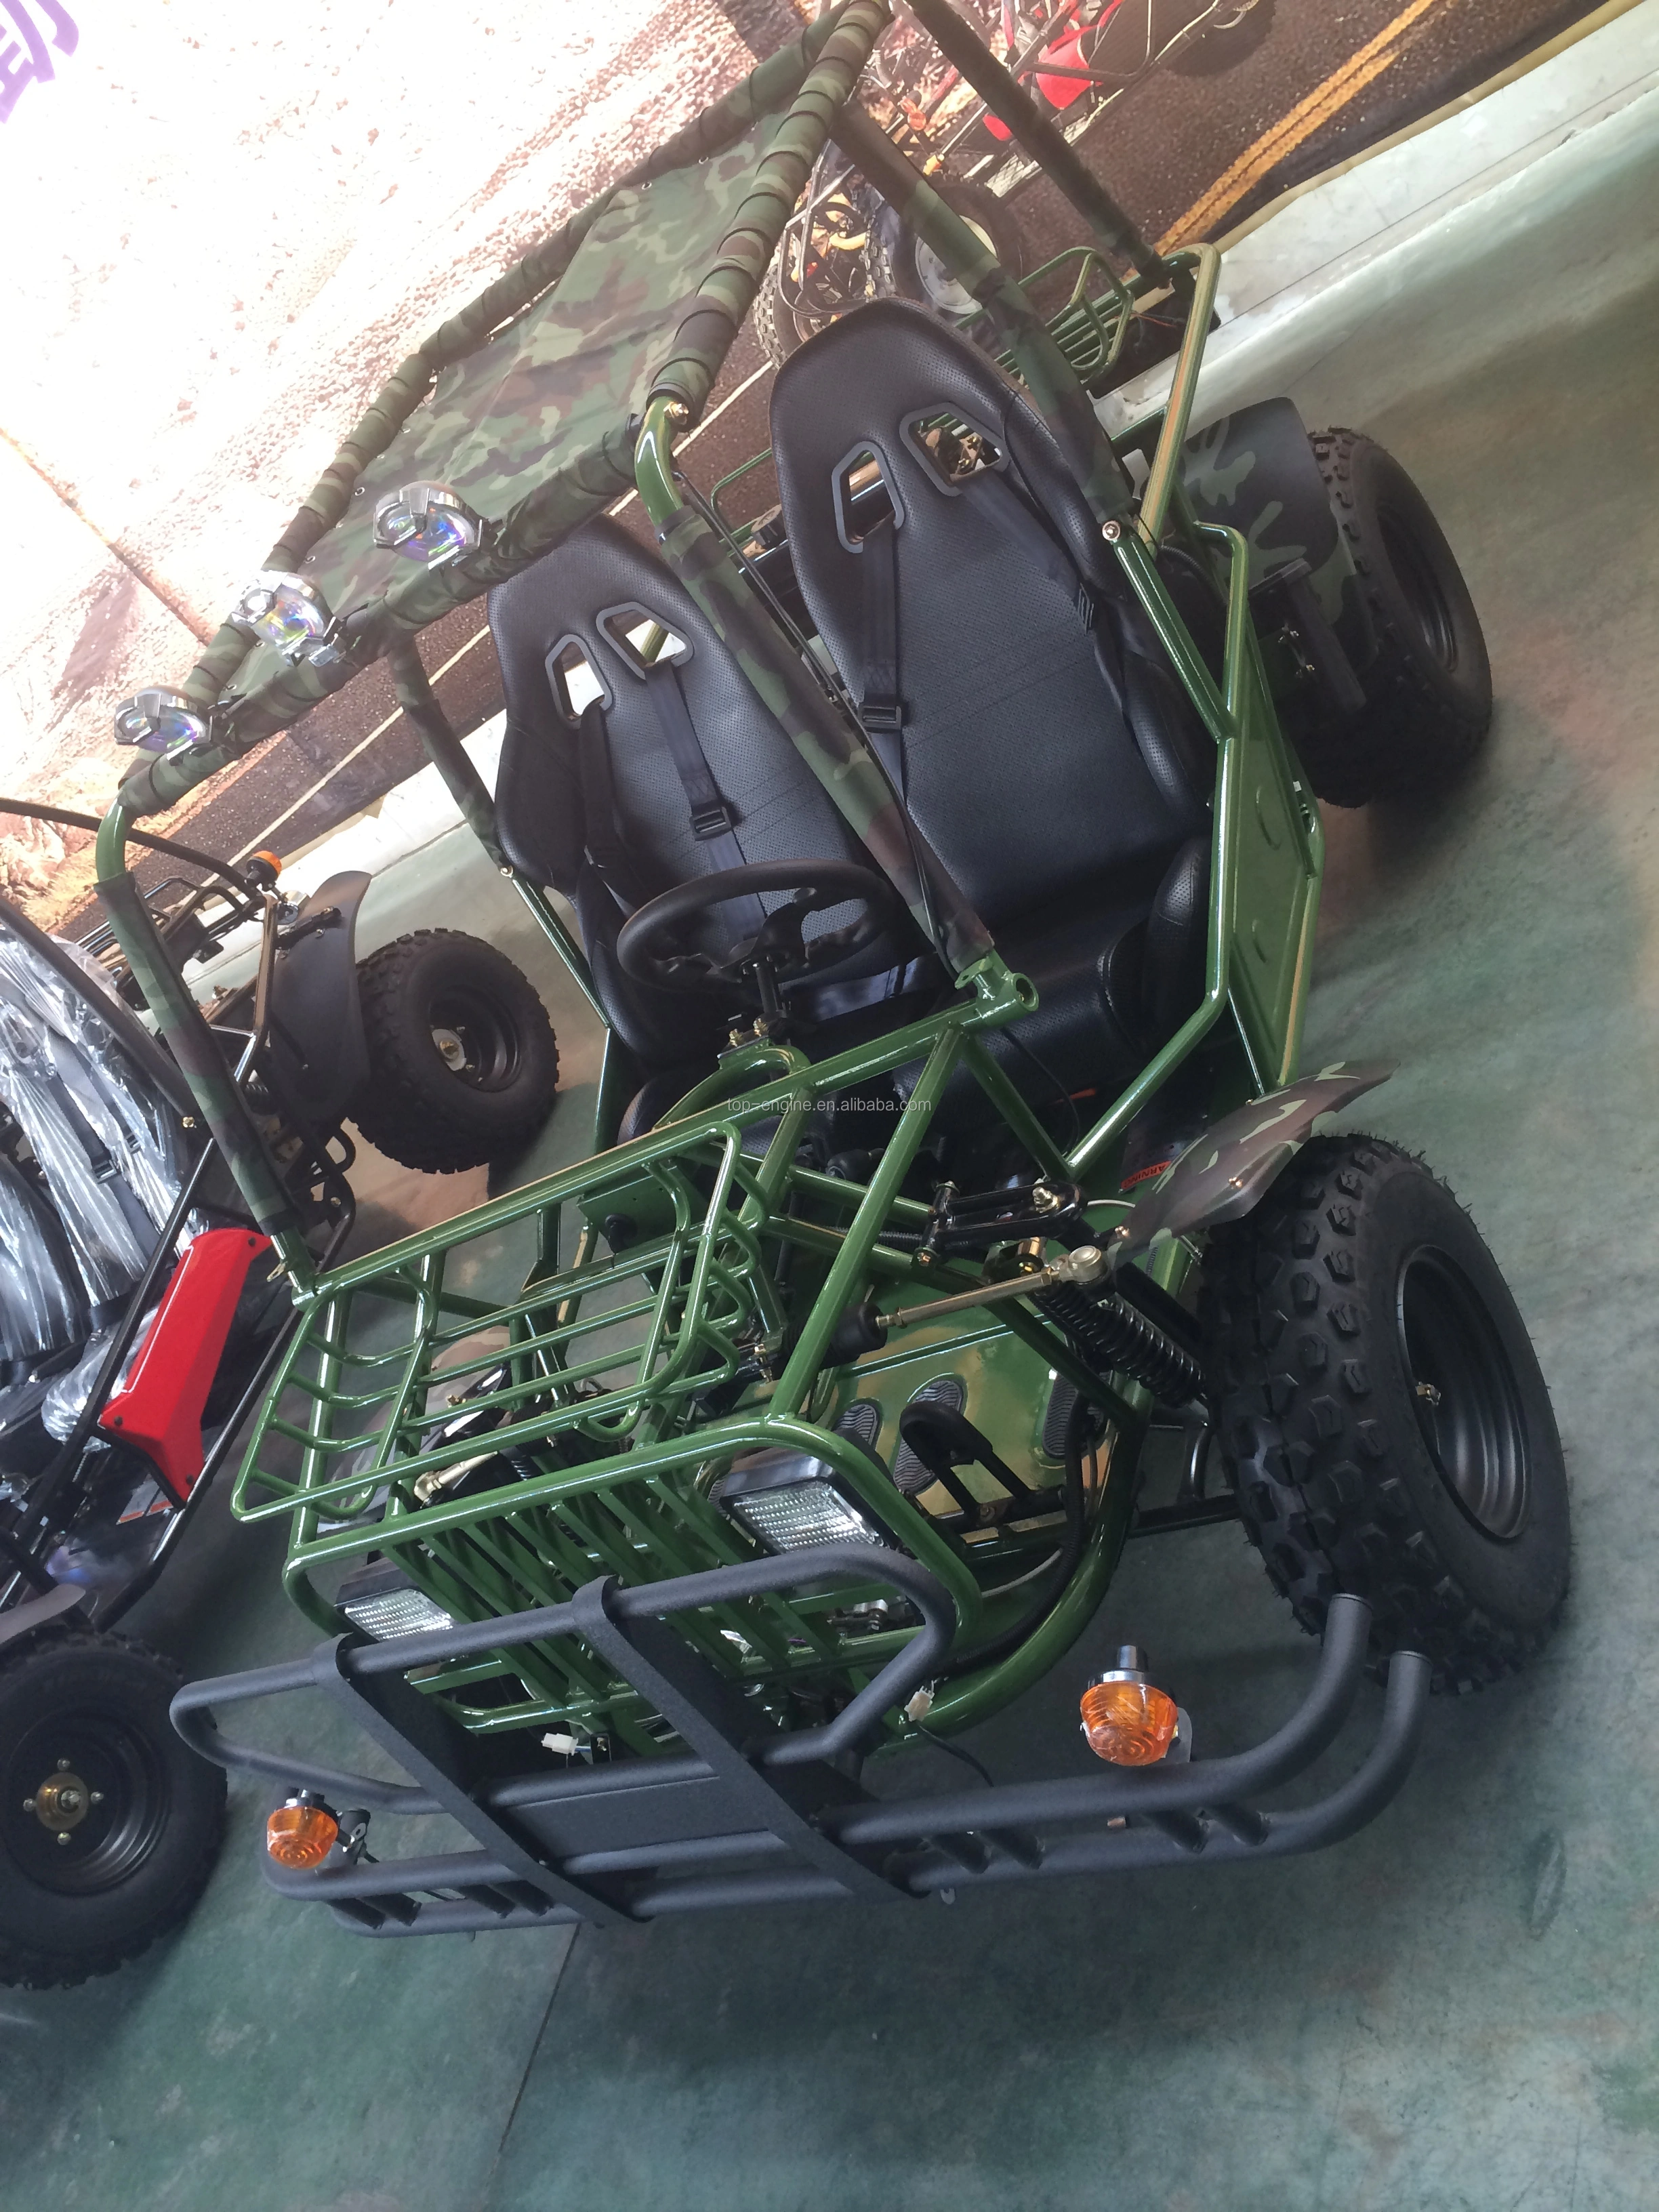 Farm style go kart buggy 200cc/150cc